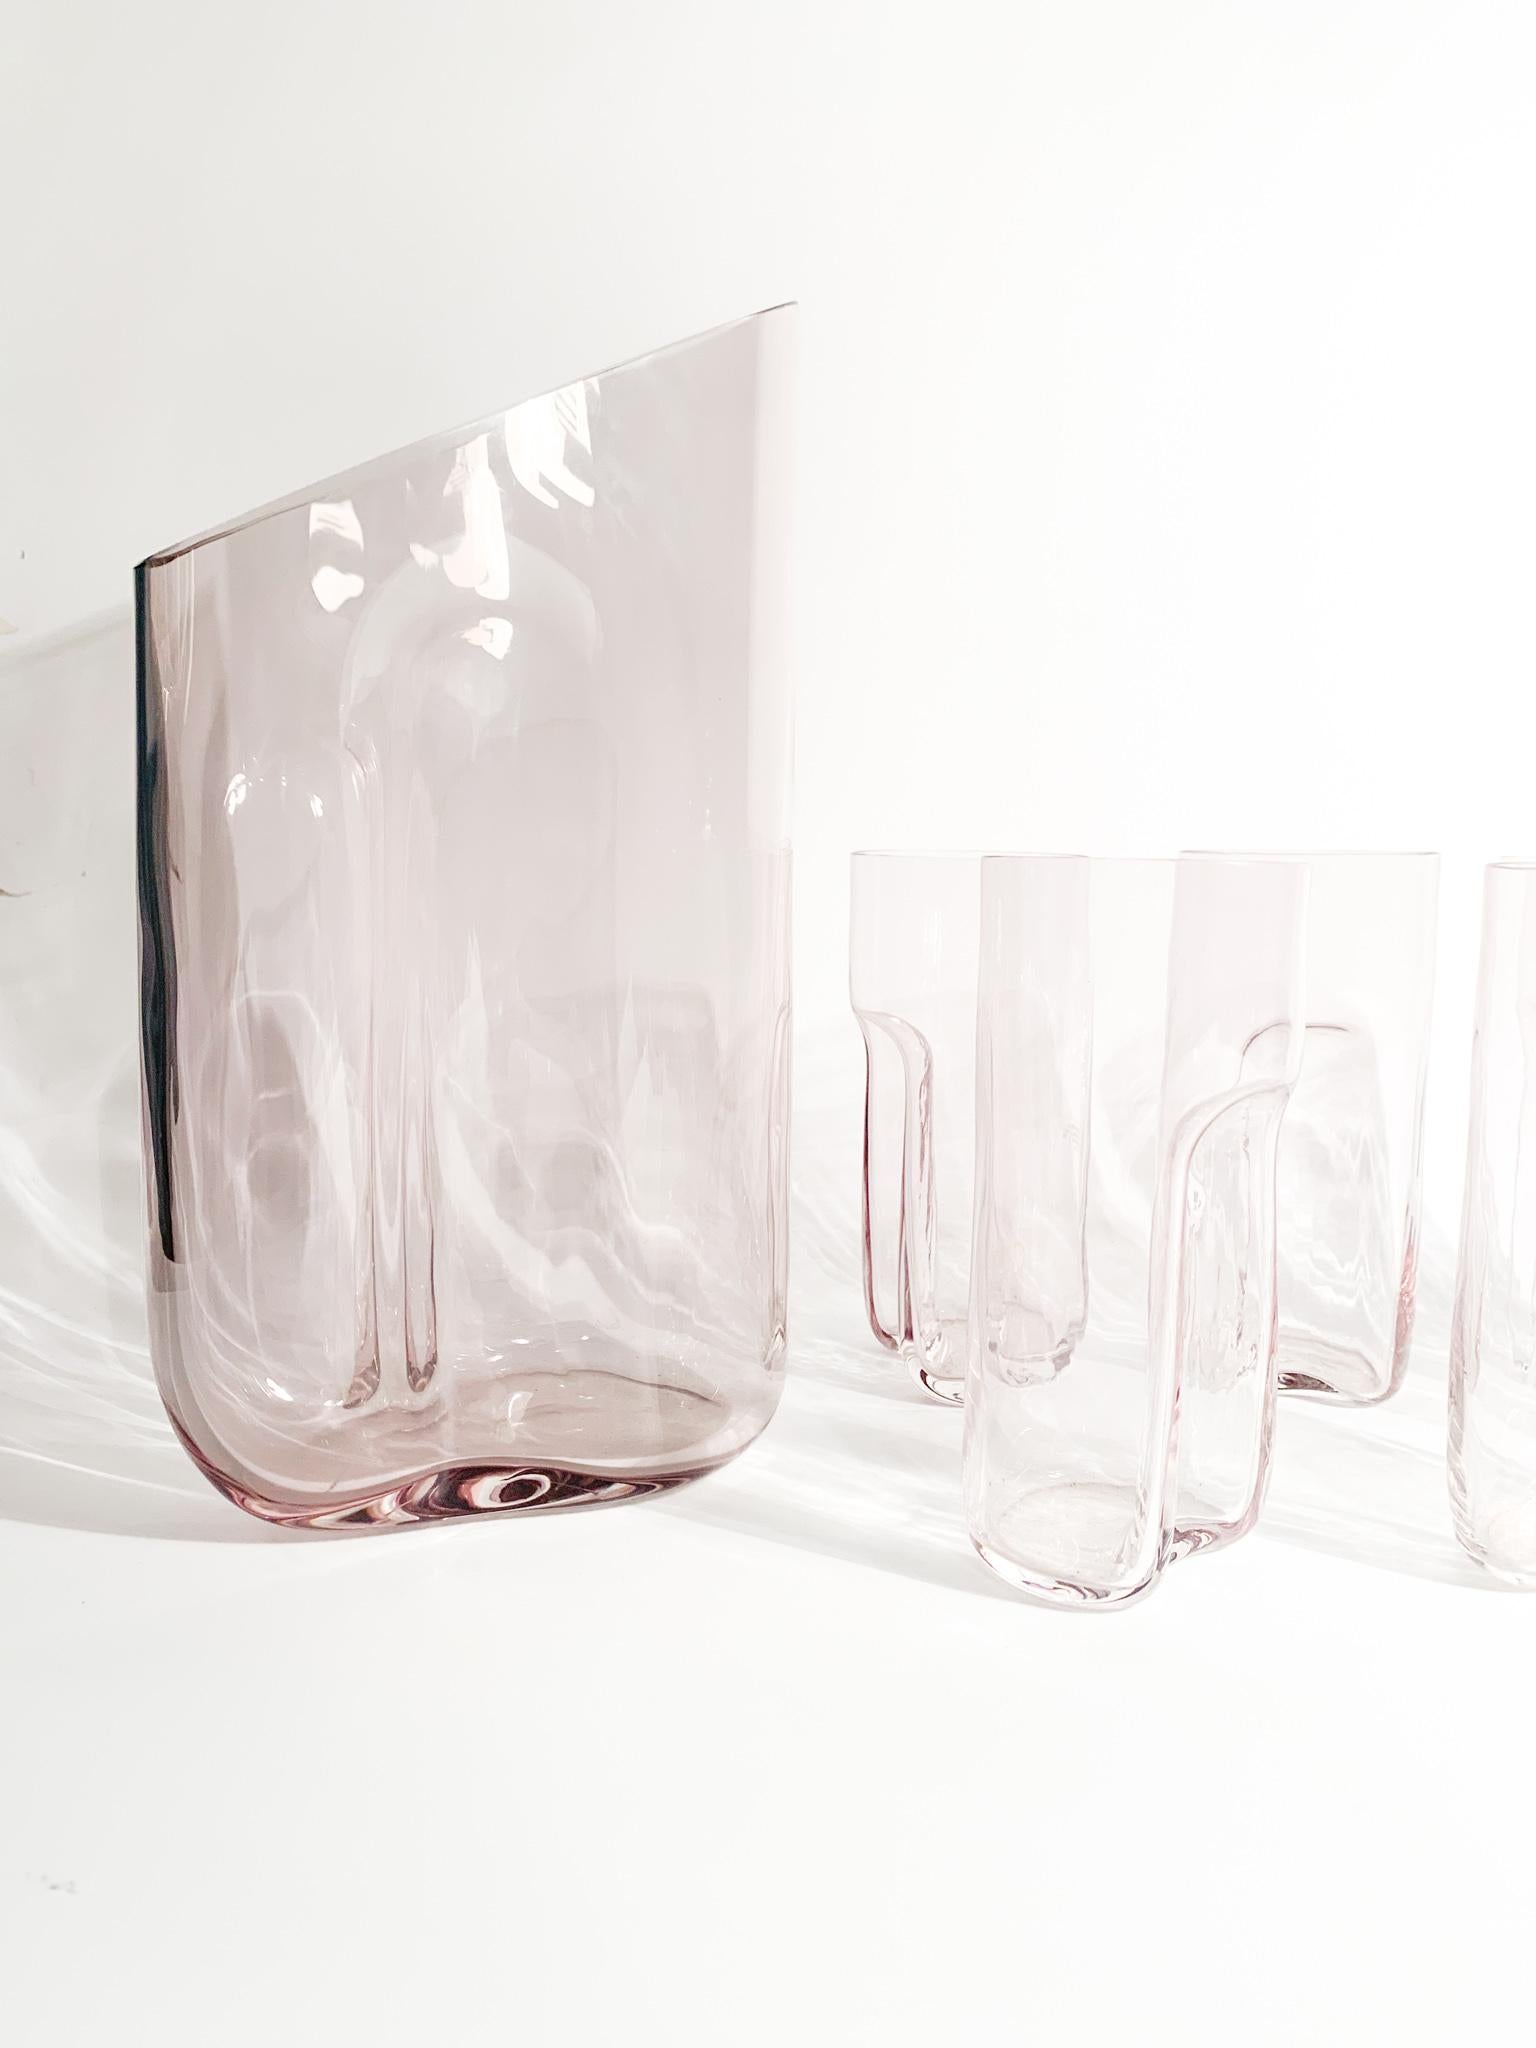 Ensemble de 6 verres avec carafe en verre rose de Murano, réalisé par Gino Cenedese et Maurizio Albarelli dans les années 1970.

Carafe - Ø 15 cm h 27 cm

Verres - Ø 6 cm h 14 cm

Depuis 1946, Simone Cenedese produit des objets artistiques dans la